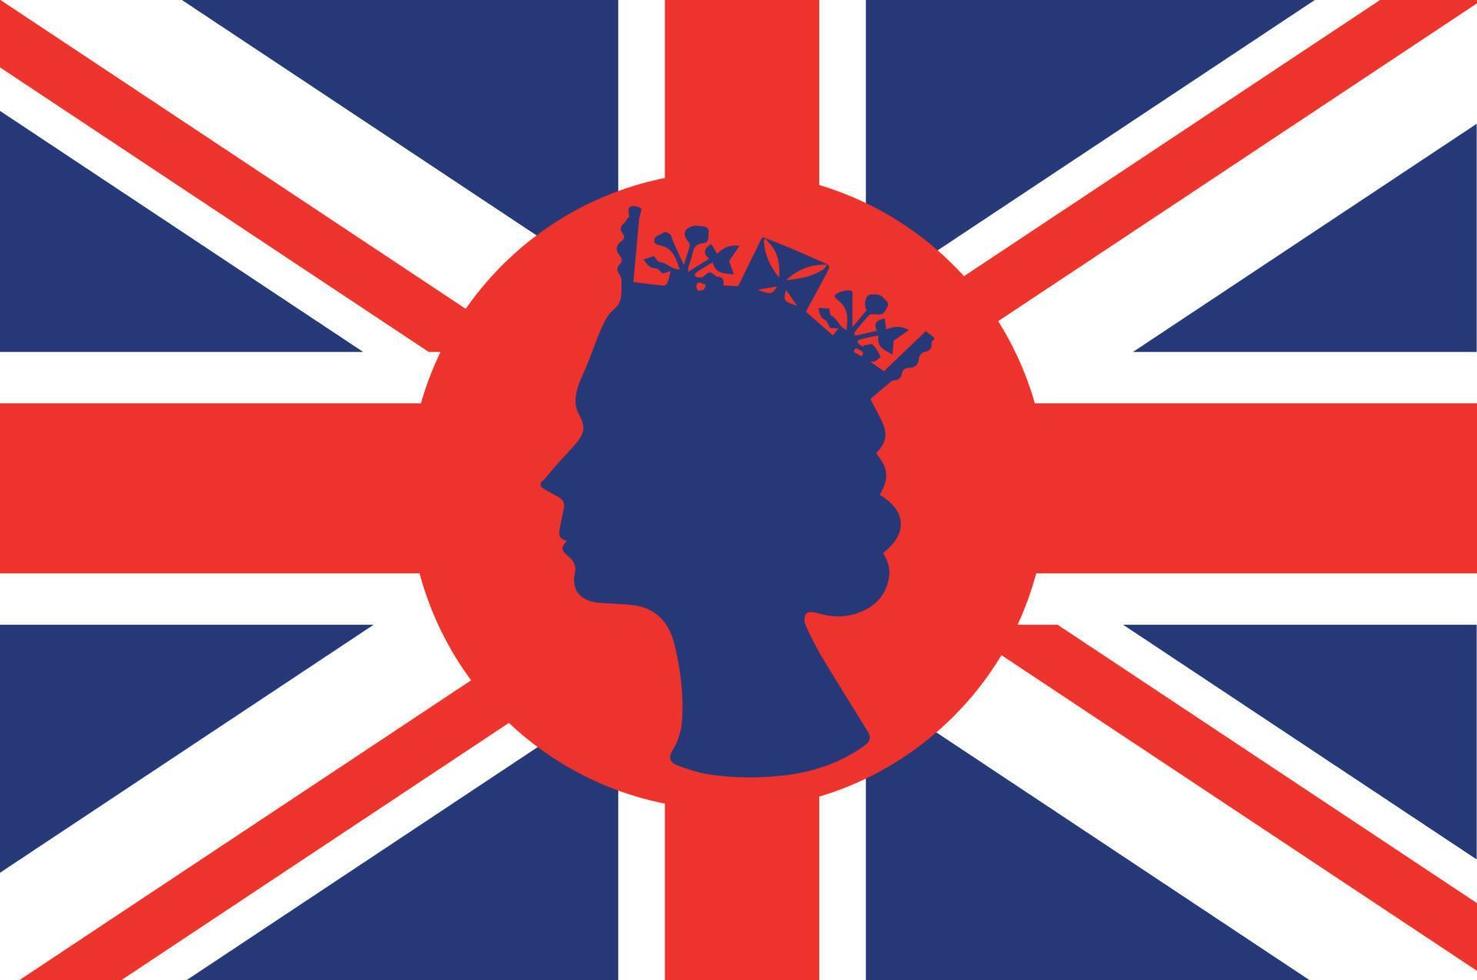 elizabeth rainha rosto azul com bandeira britânica do reino unido nacional europa emblema ícone ilustração vetorial elemento de design abstrato vetor